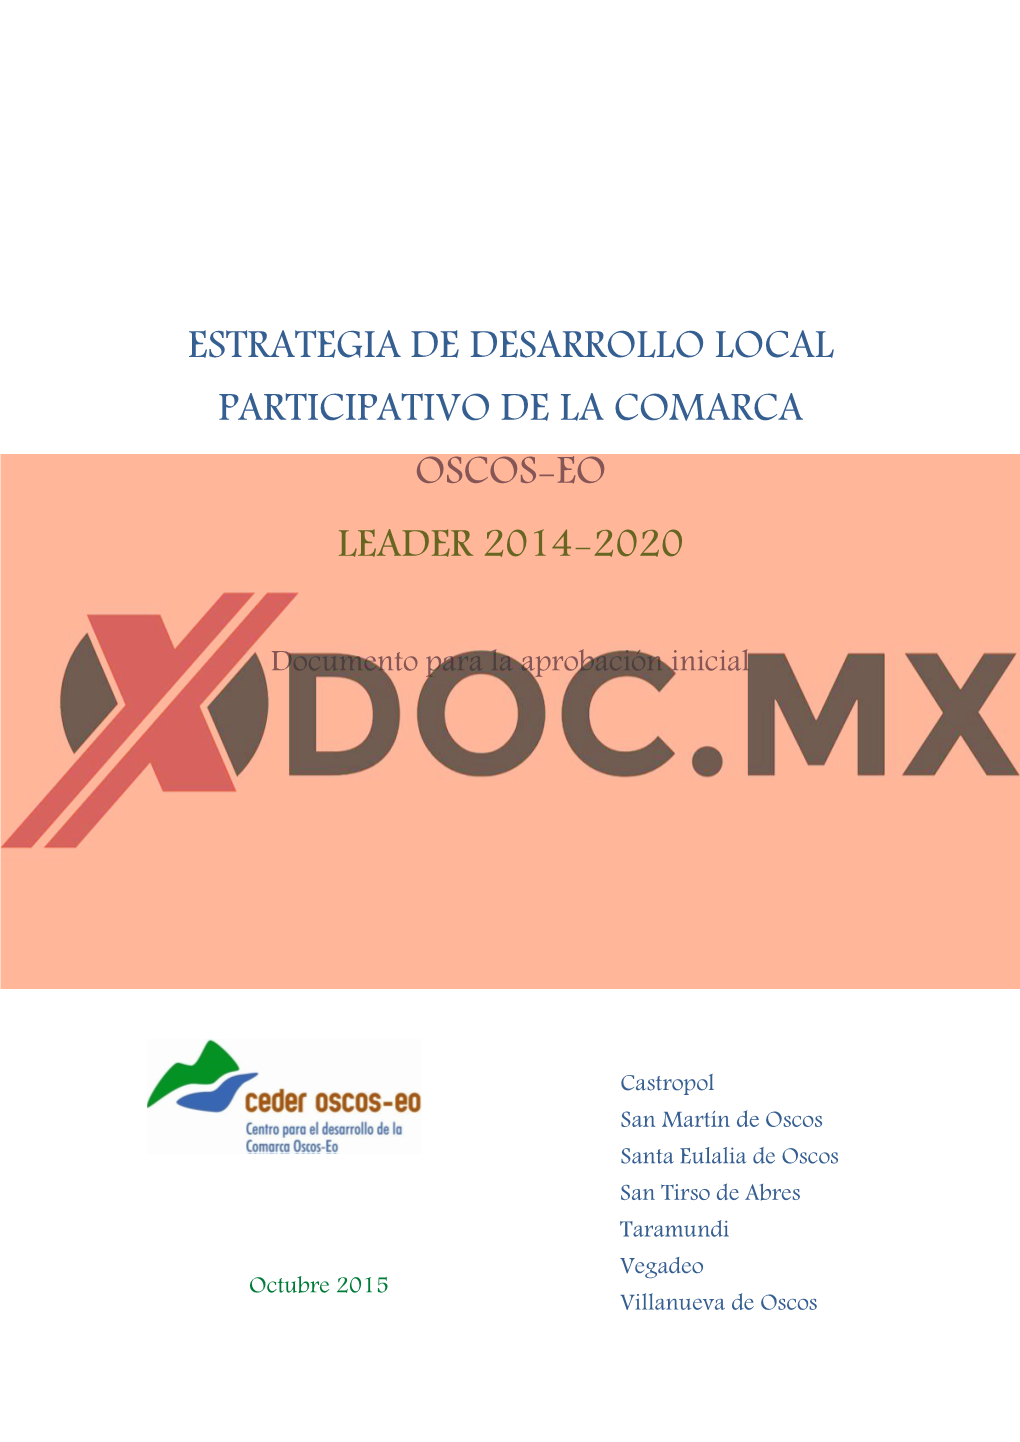 Estrategia De Desarrollo Local Participativo De La Comarca Oscos-Eo